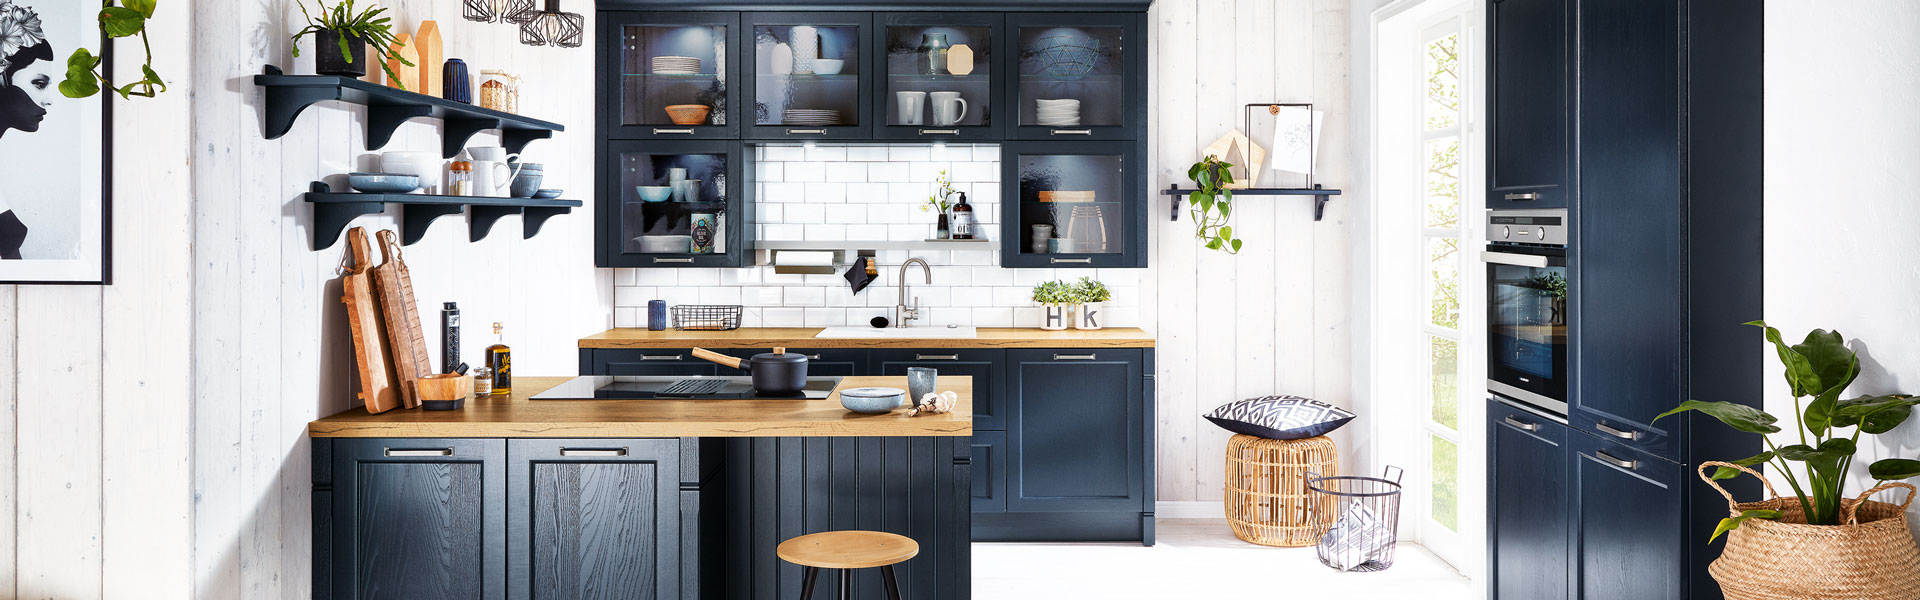 Blauwe klassieke keuken | Eigenhuis Keukens